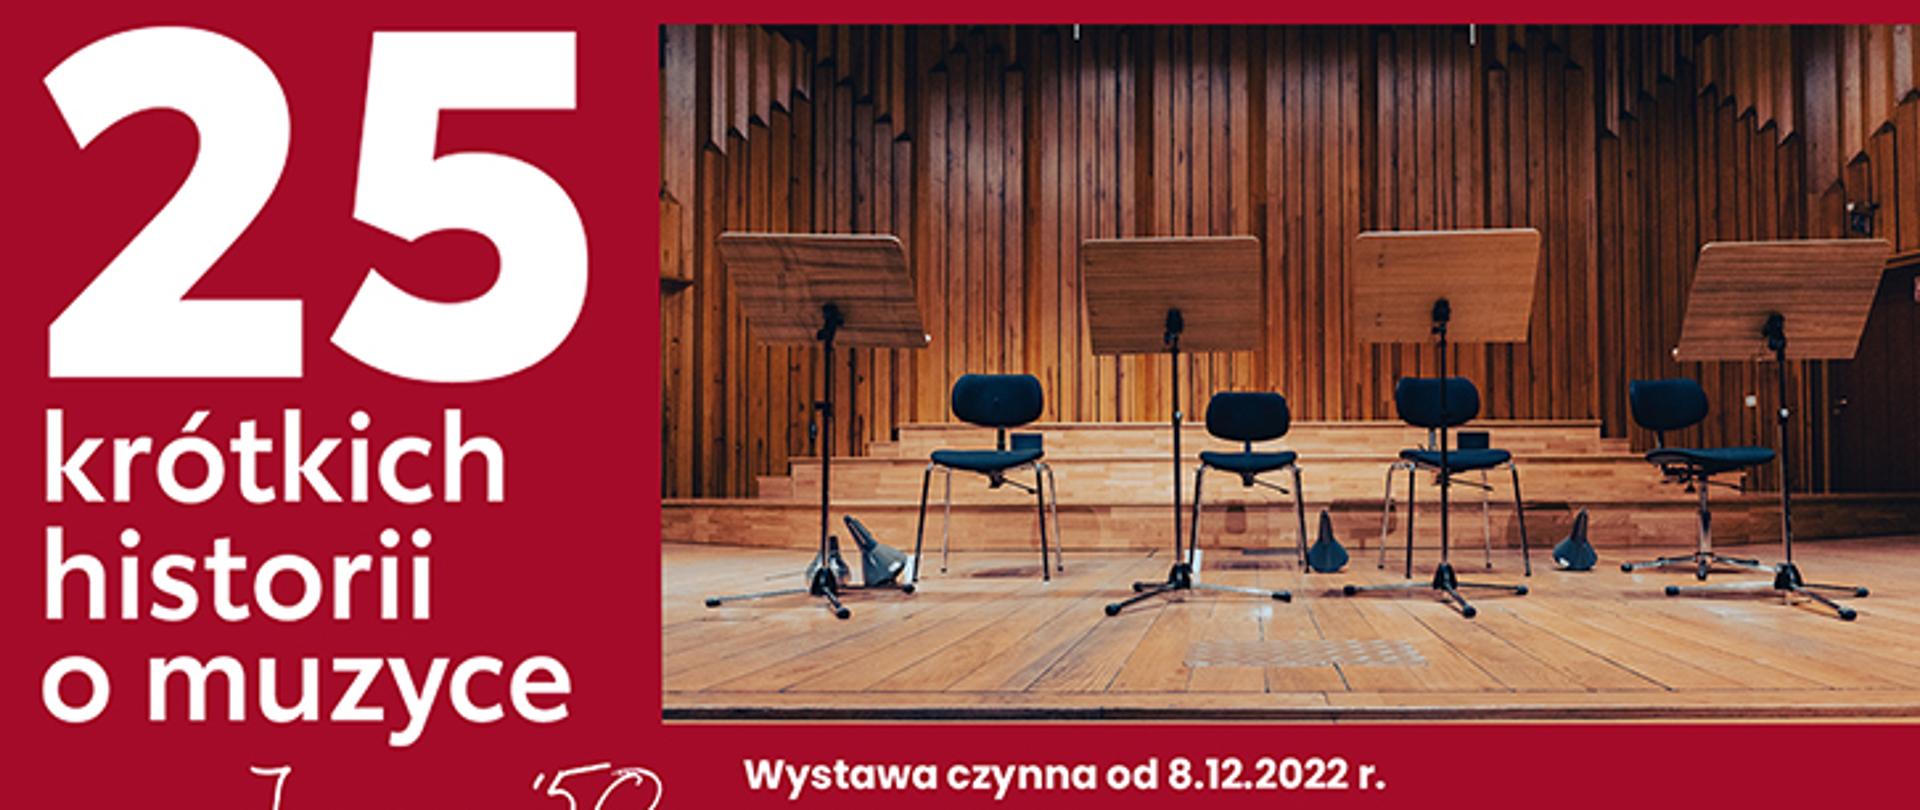 Plakat 25 krótkich historii o muzyce. Zdjęcie sceny sali koncertowej w ZPSM w B-B. na czerwonym tle. Wystawa czynna od 08.12.2022 r. W dolnym rogu od lewej logo szkoły, logo miasta Bielsko-Biała. 